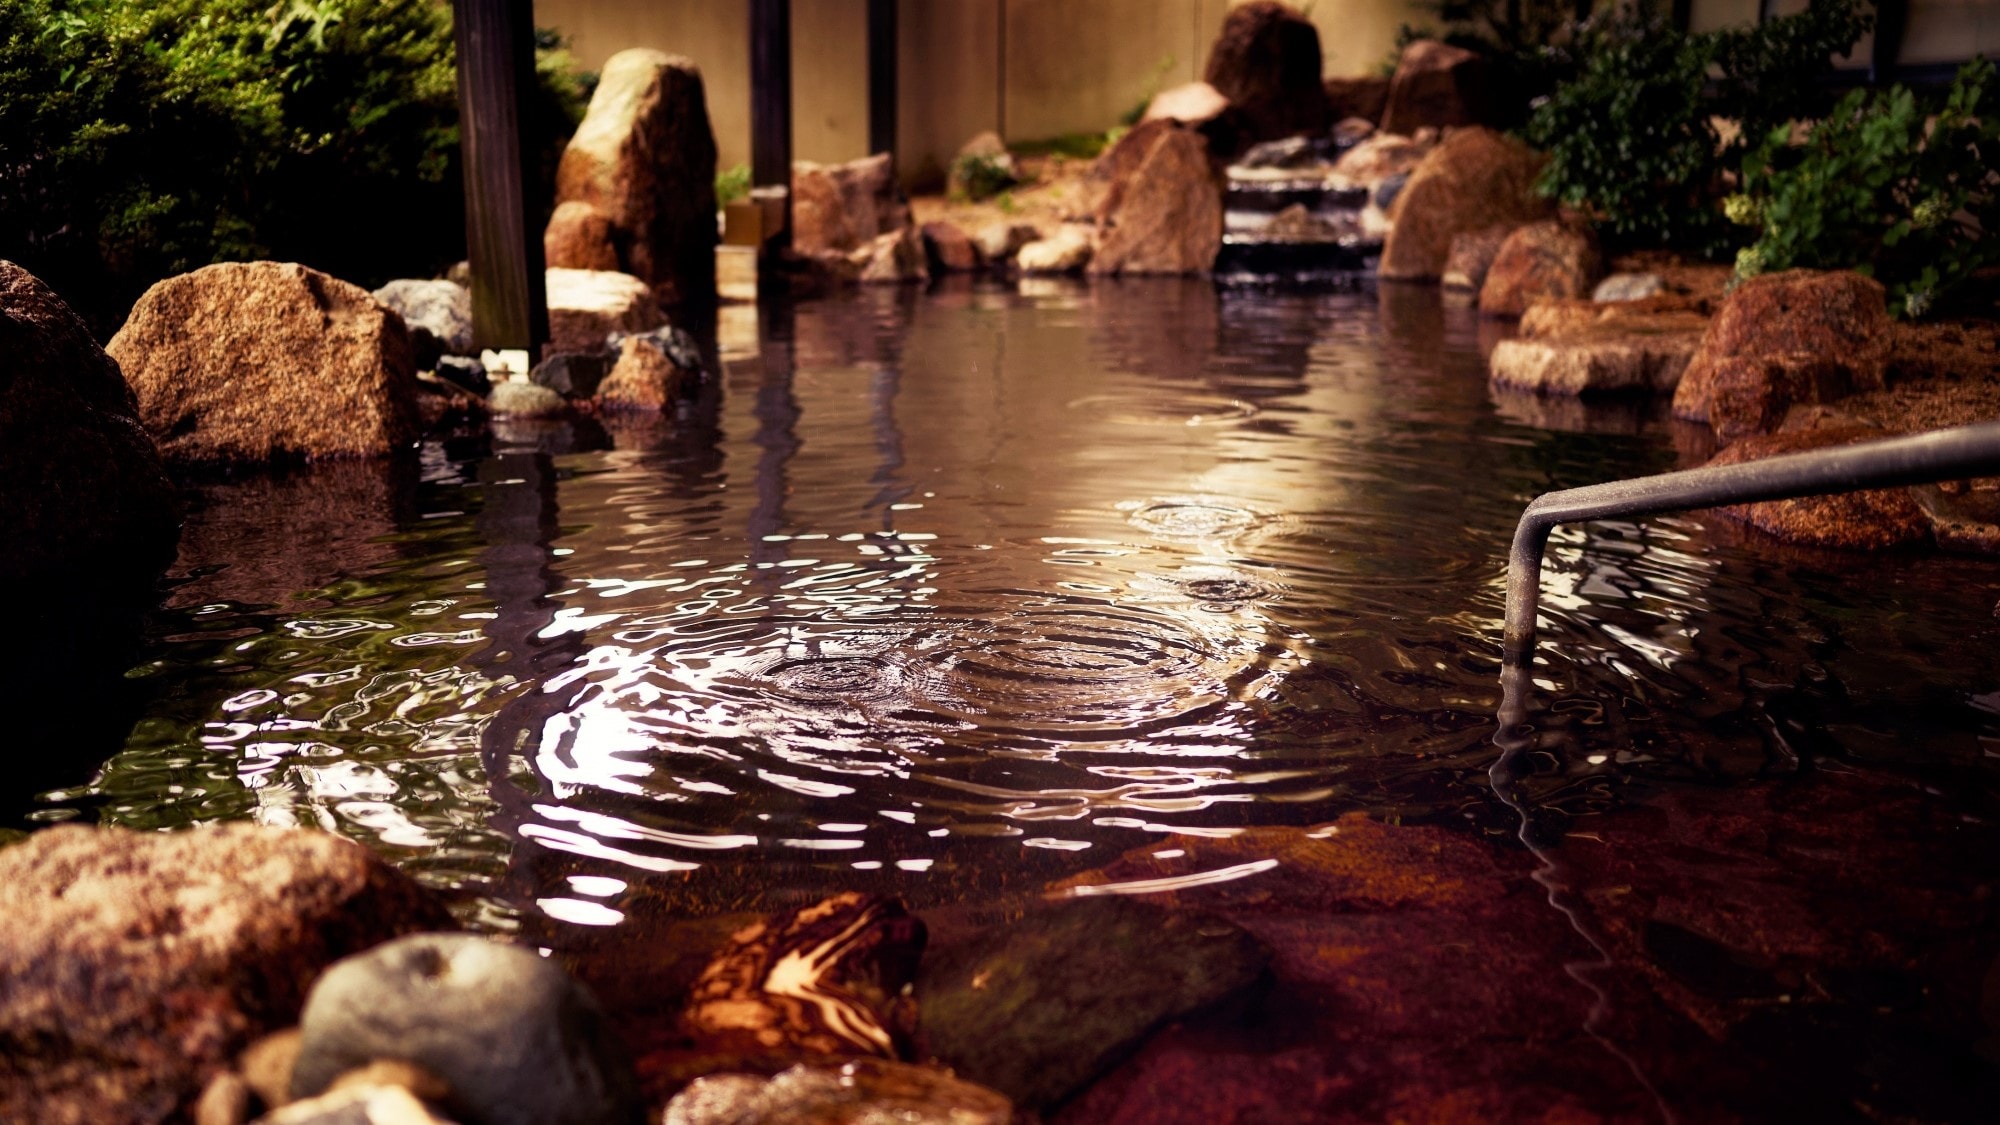 An example of an open-air bath / First basement floor, open-air hot spring rock bath